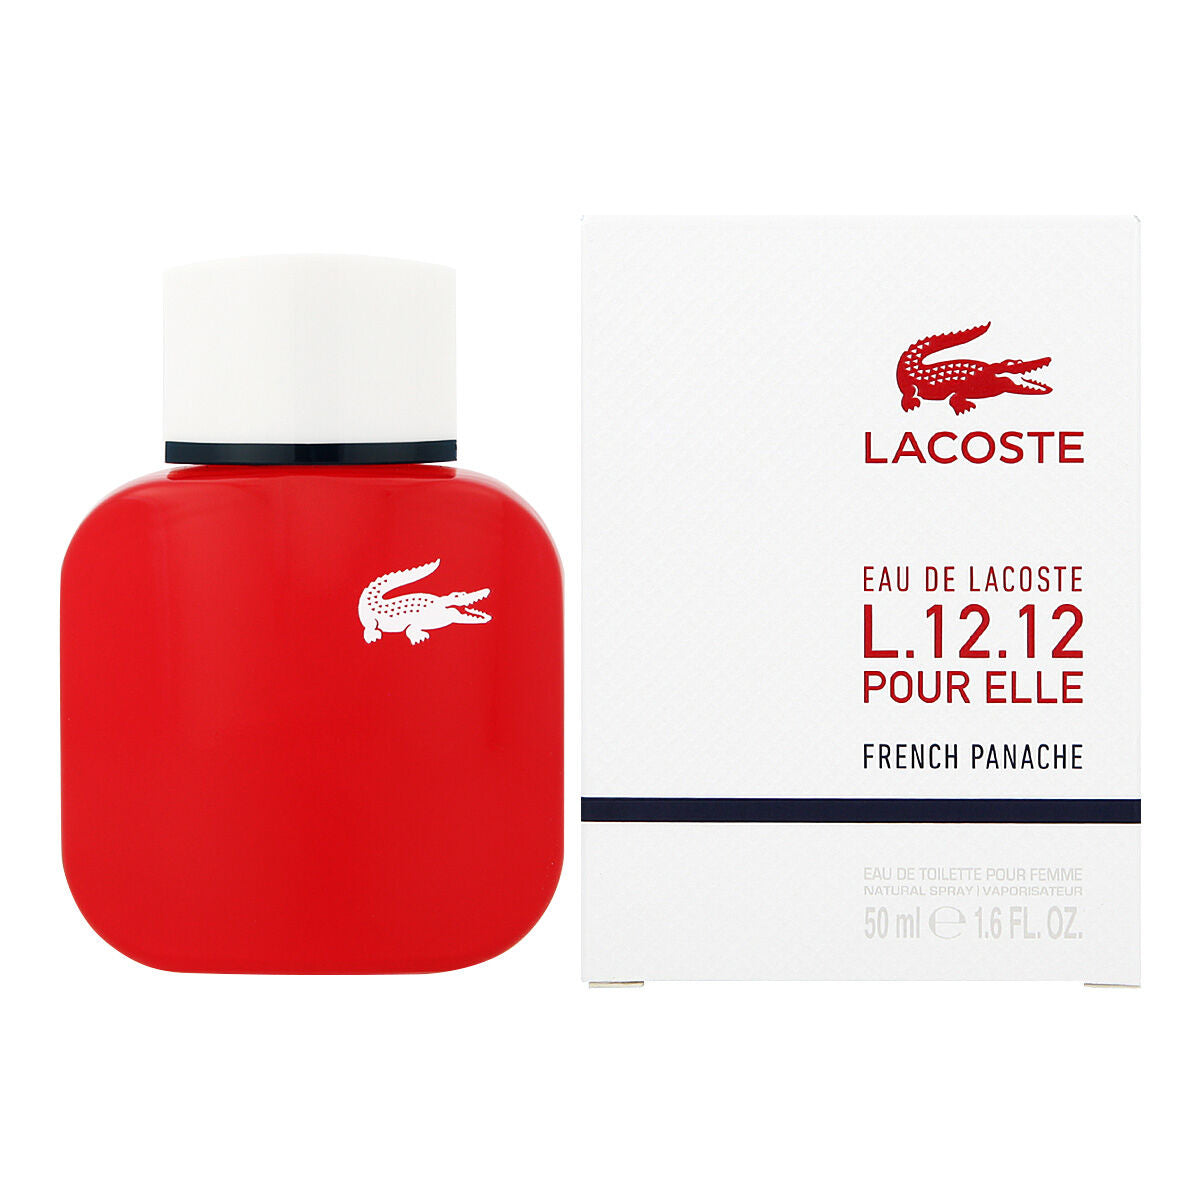 Damesparfum Lacoste EDT Eau de Lacoste L.12.12 French Panache 50 ml